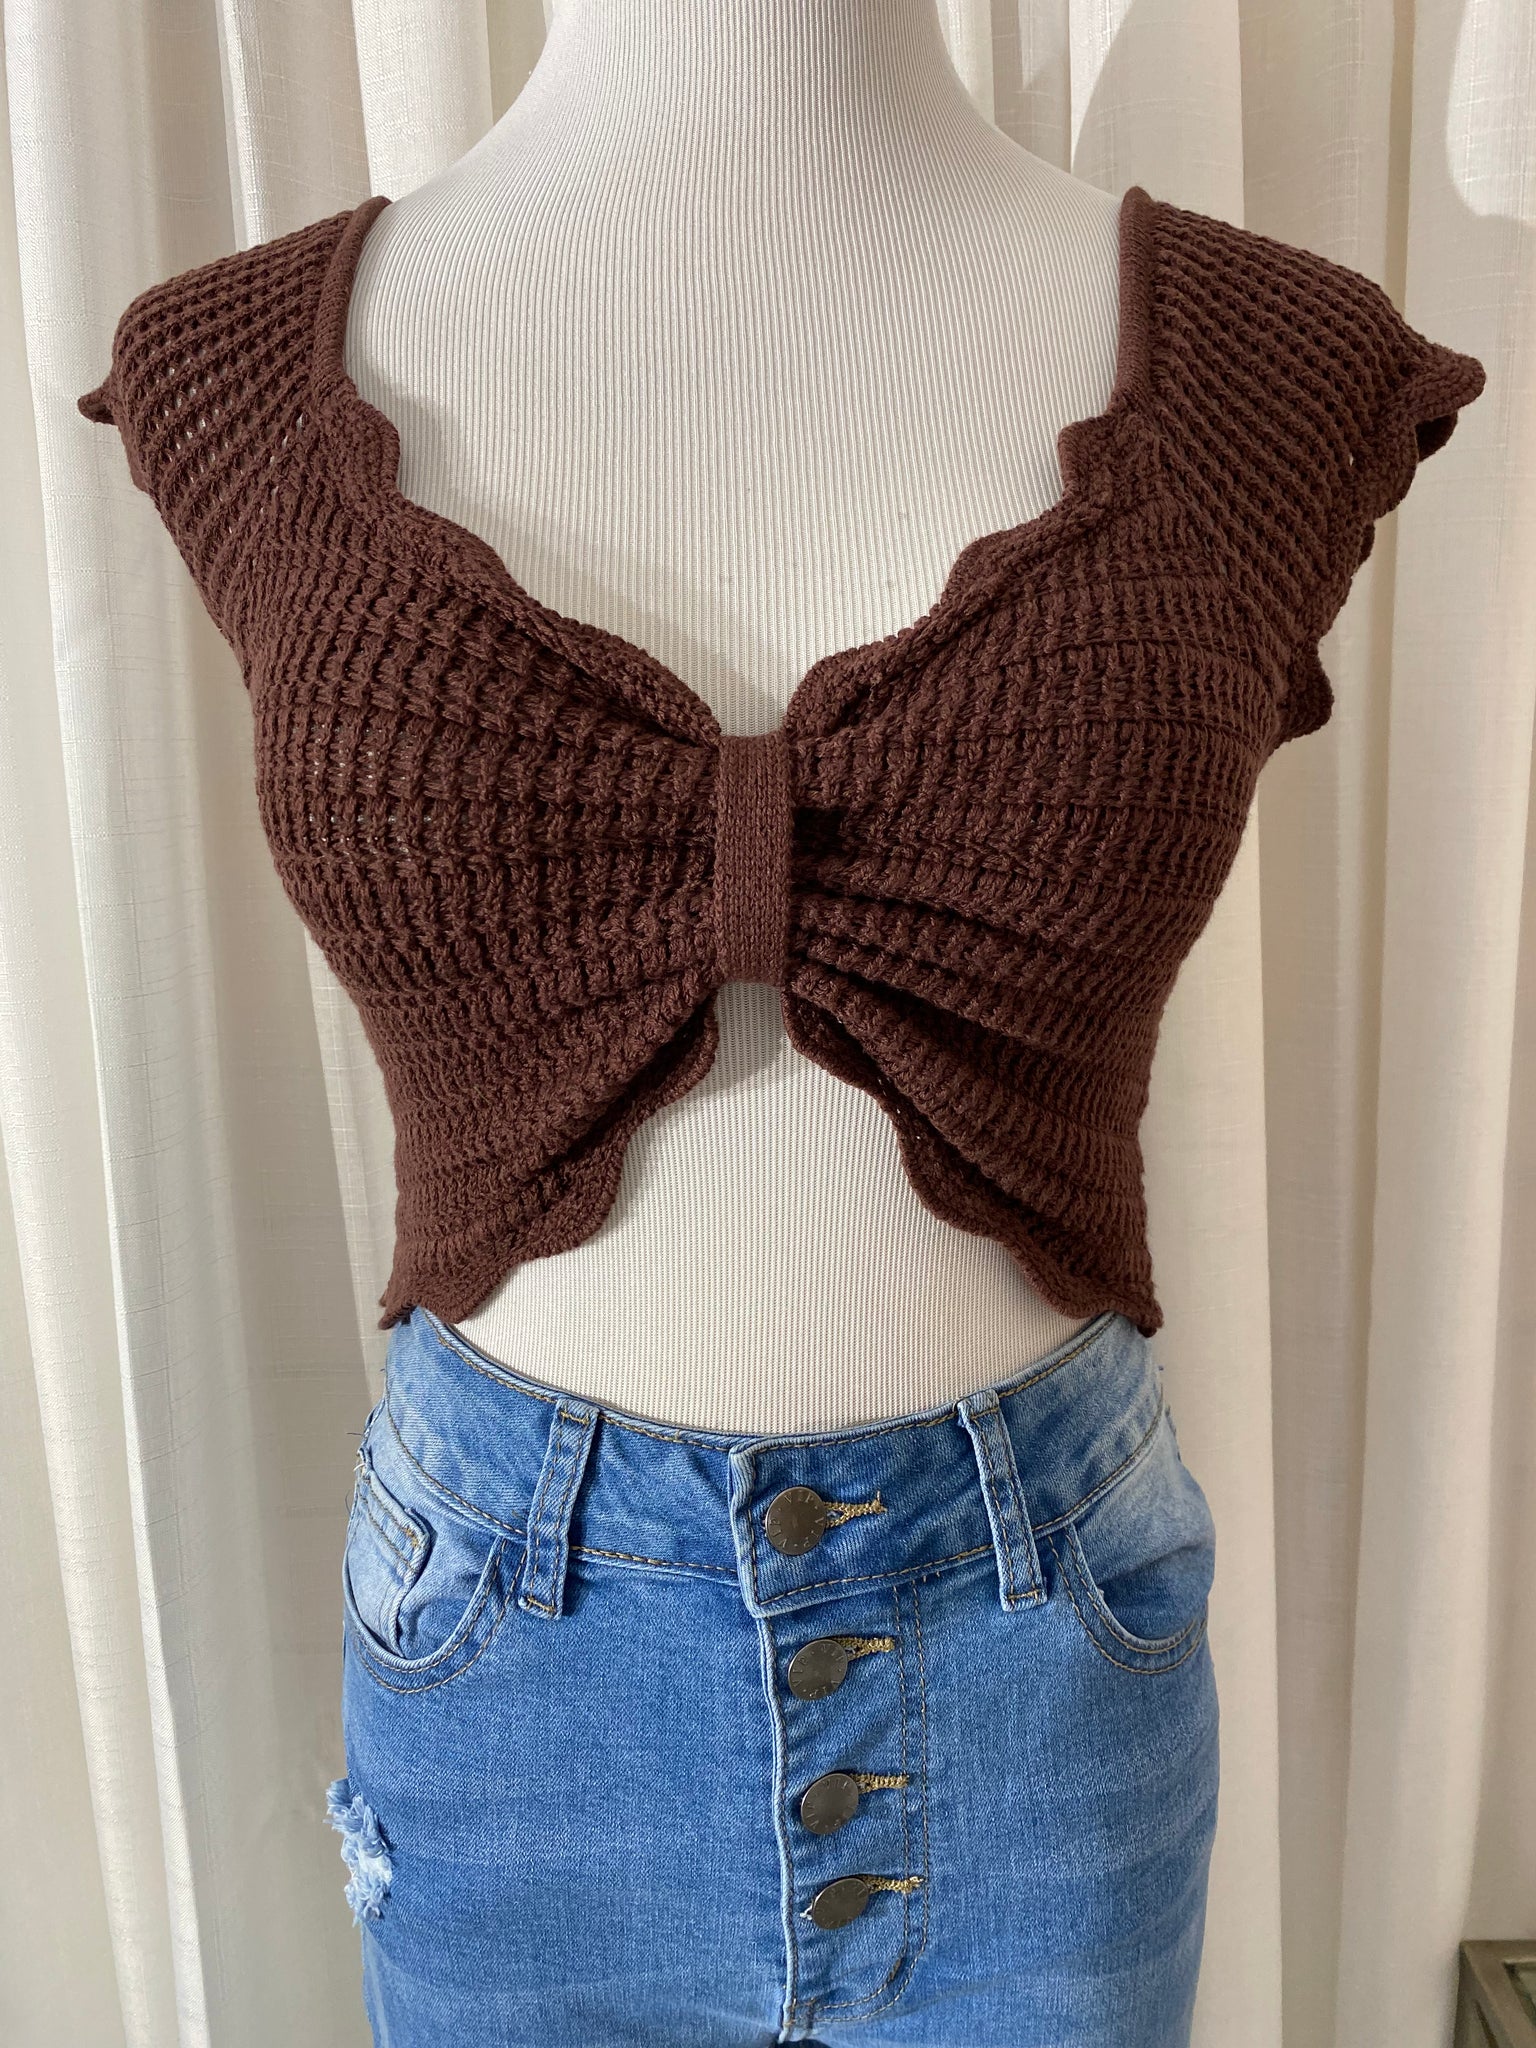 The “Bonett” Crochet Top